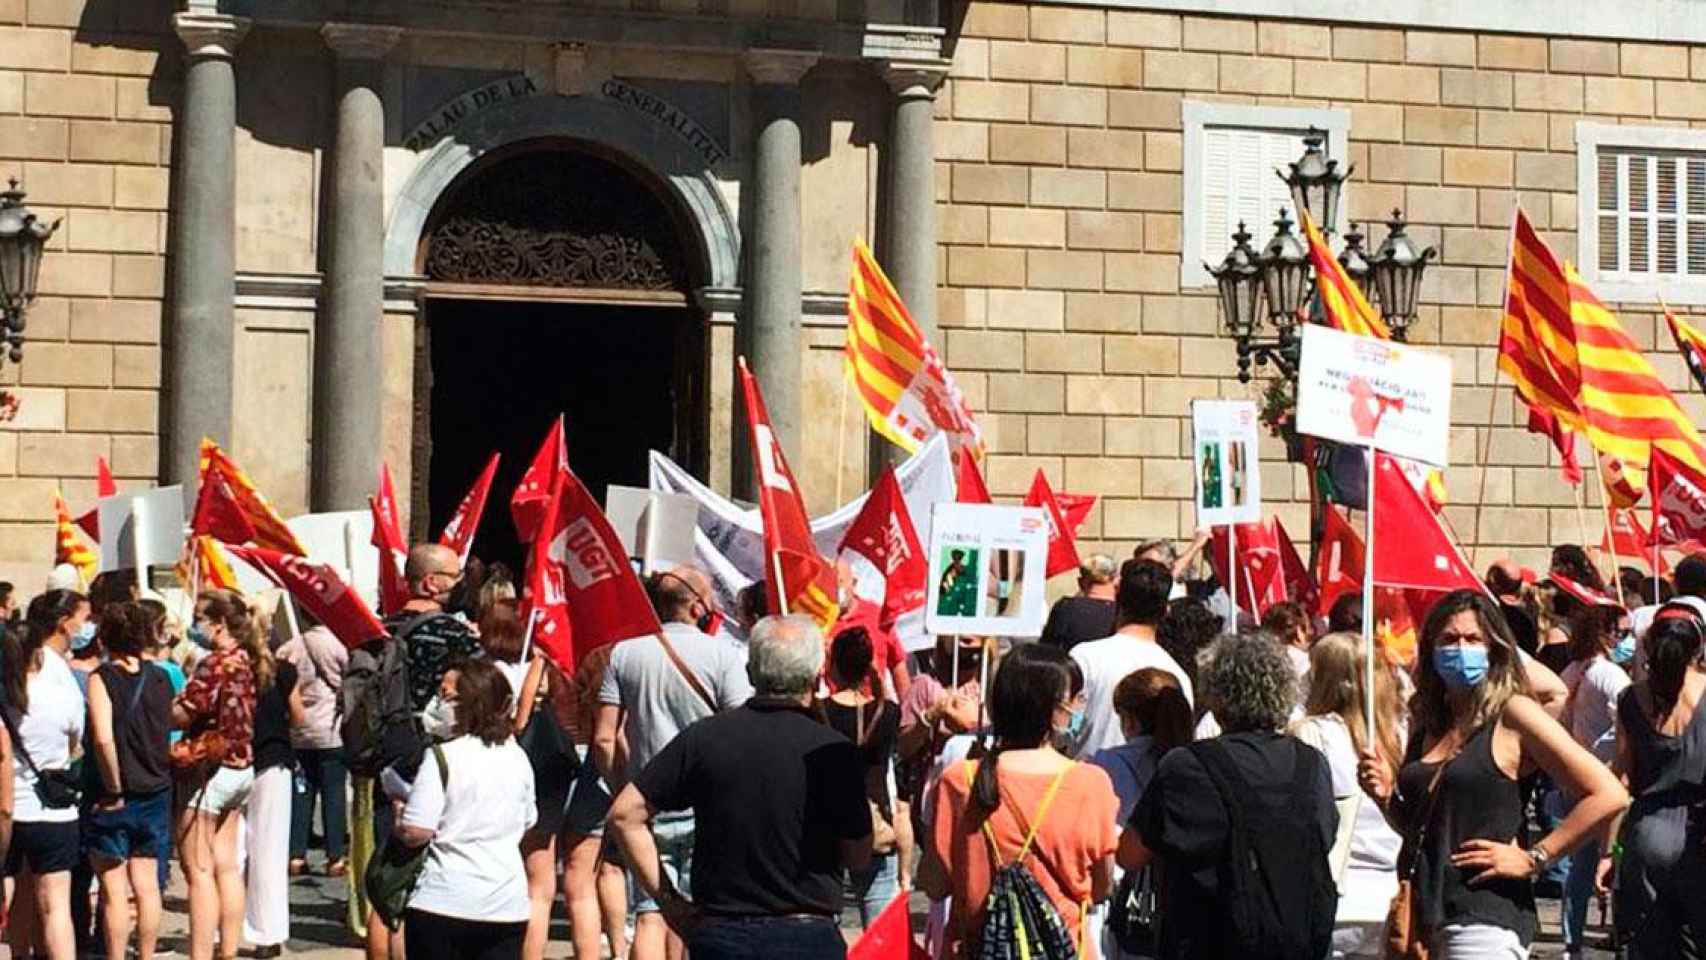 Imagen de la protesta de sanitarios ante el Palau de la Generalitat de Cataluña / CG